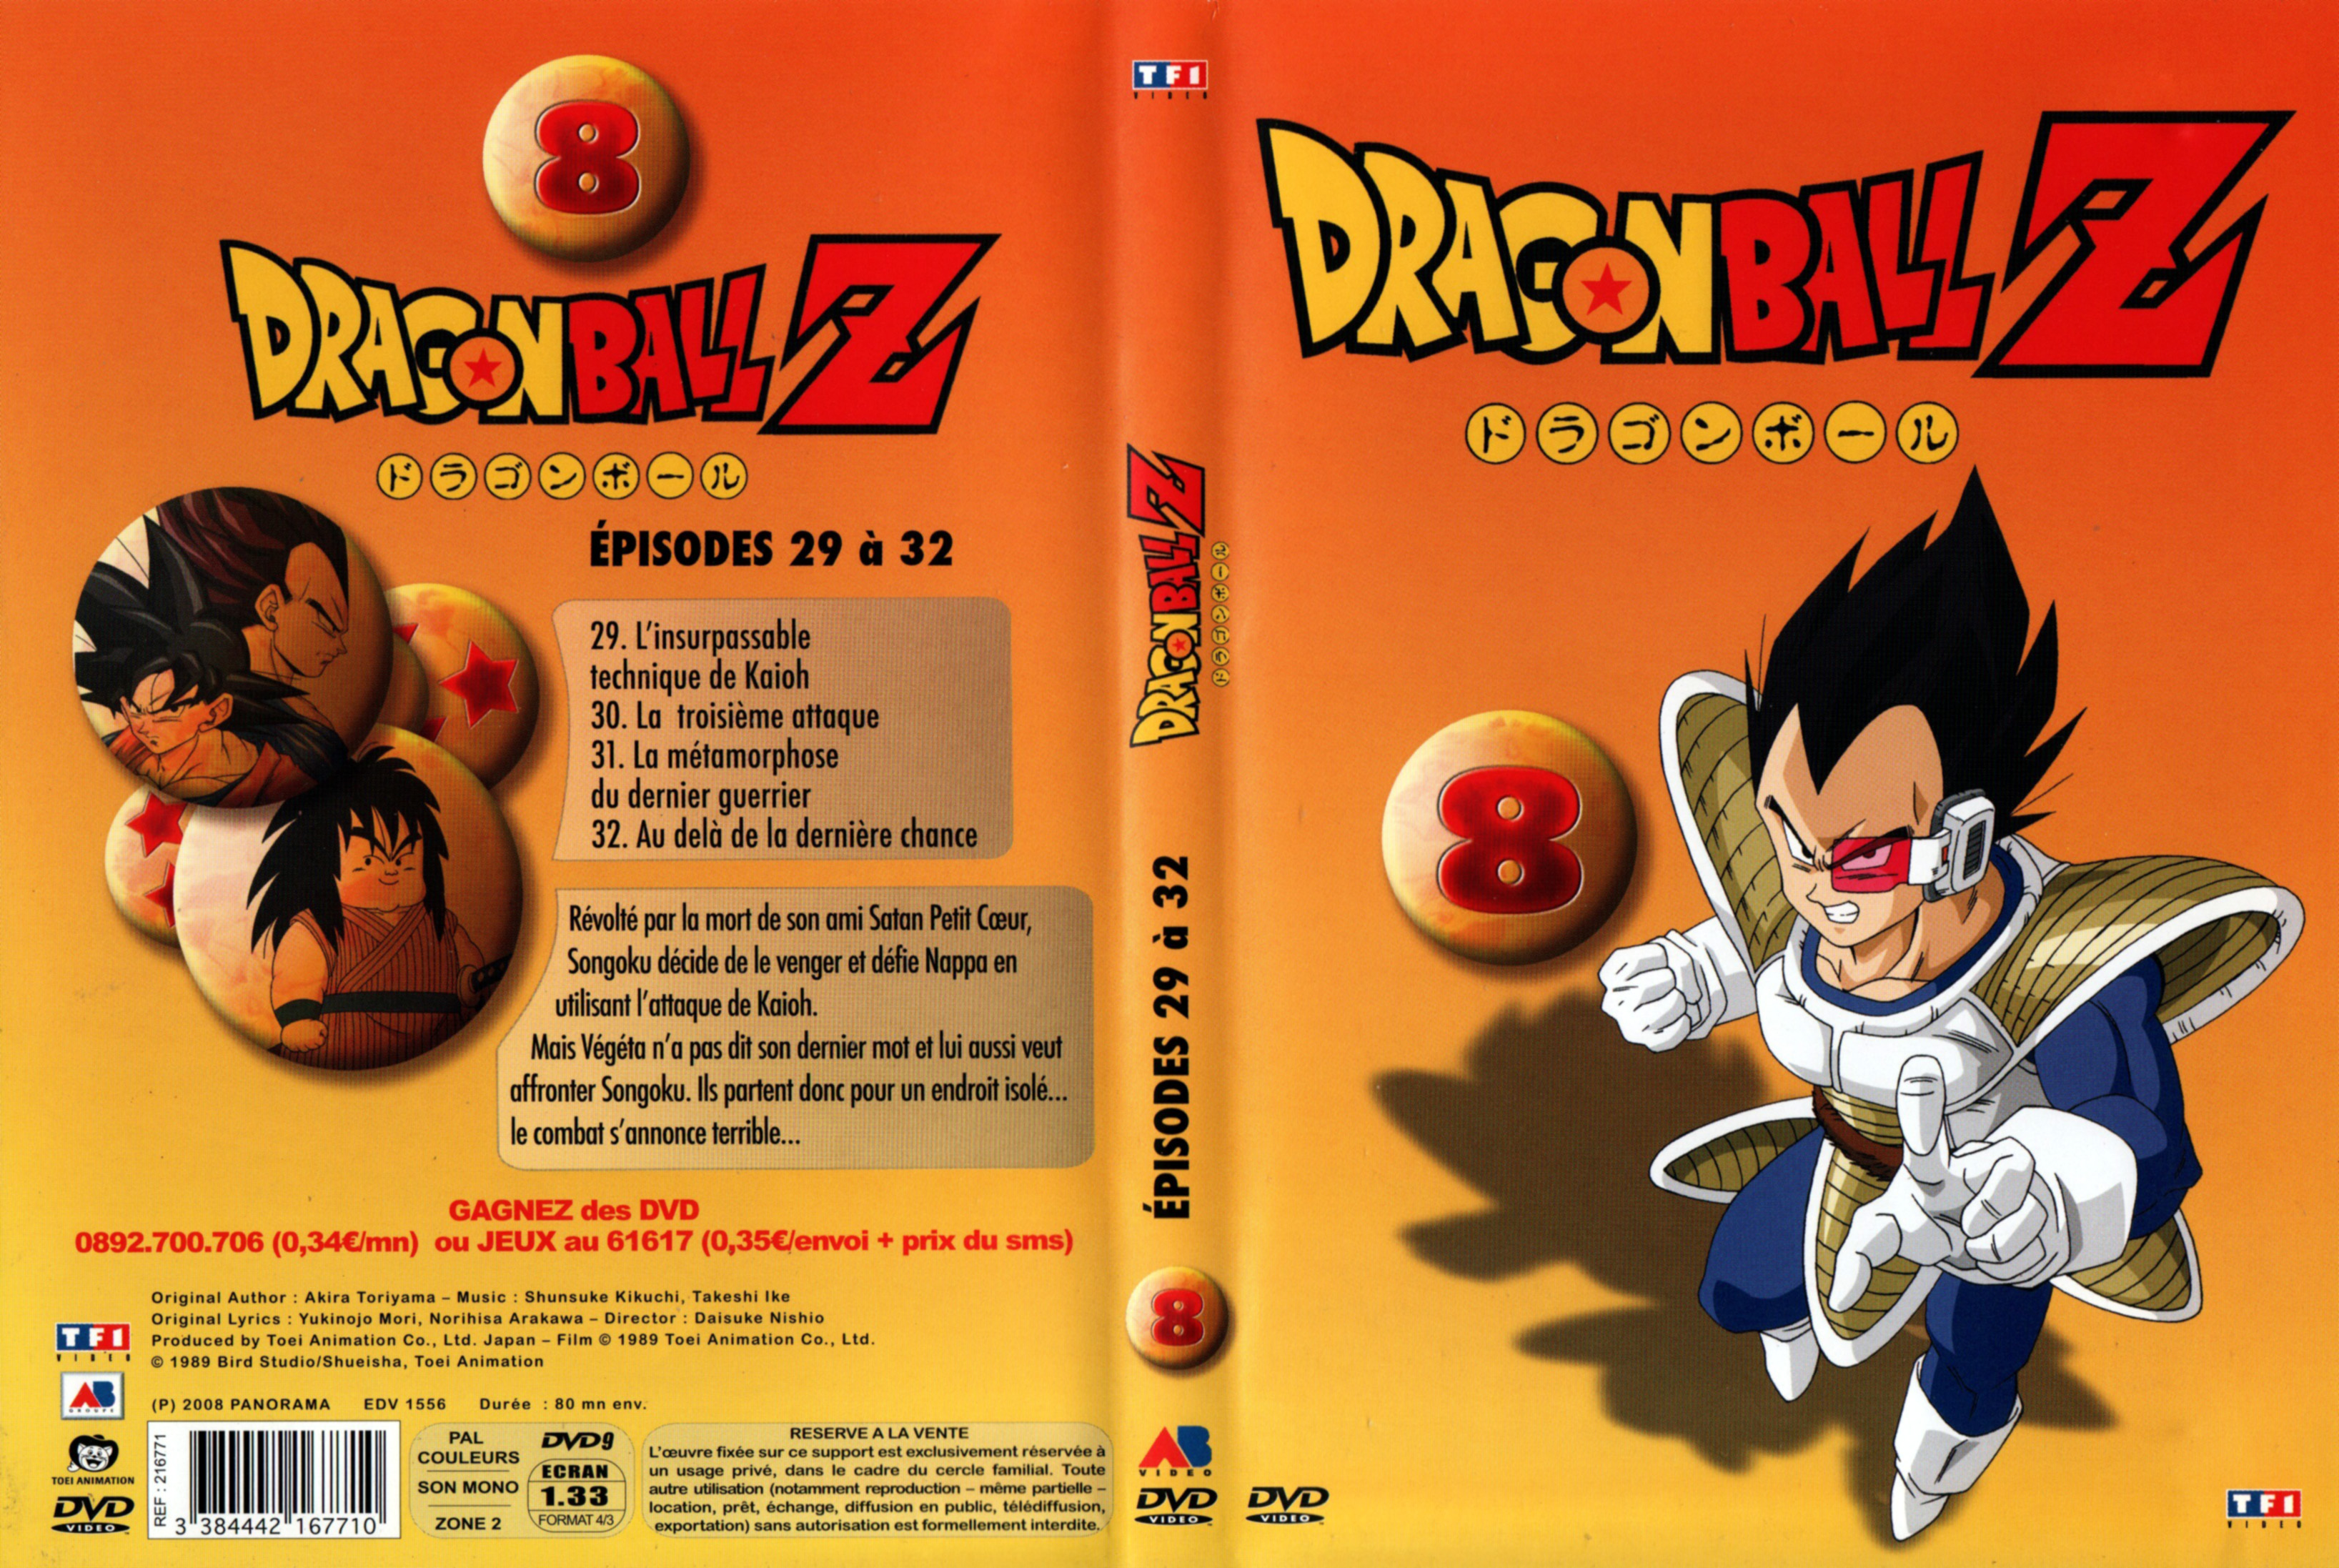 Jaquette DVD Dragon Ball Z vol 08 v2